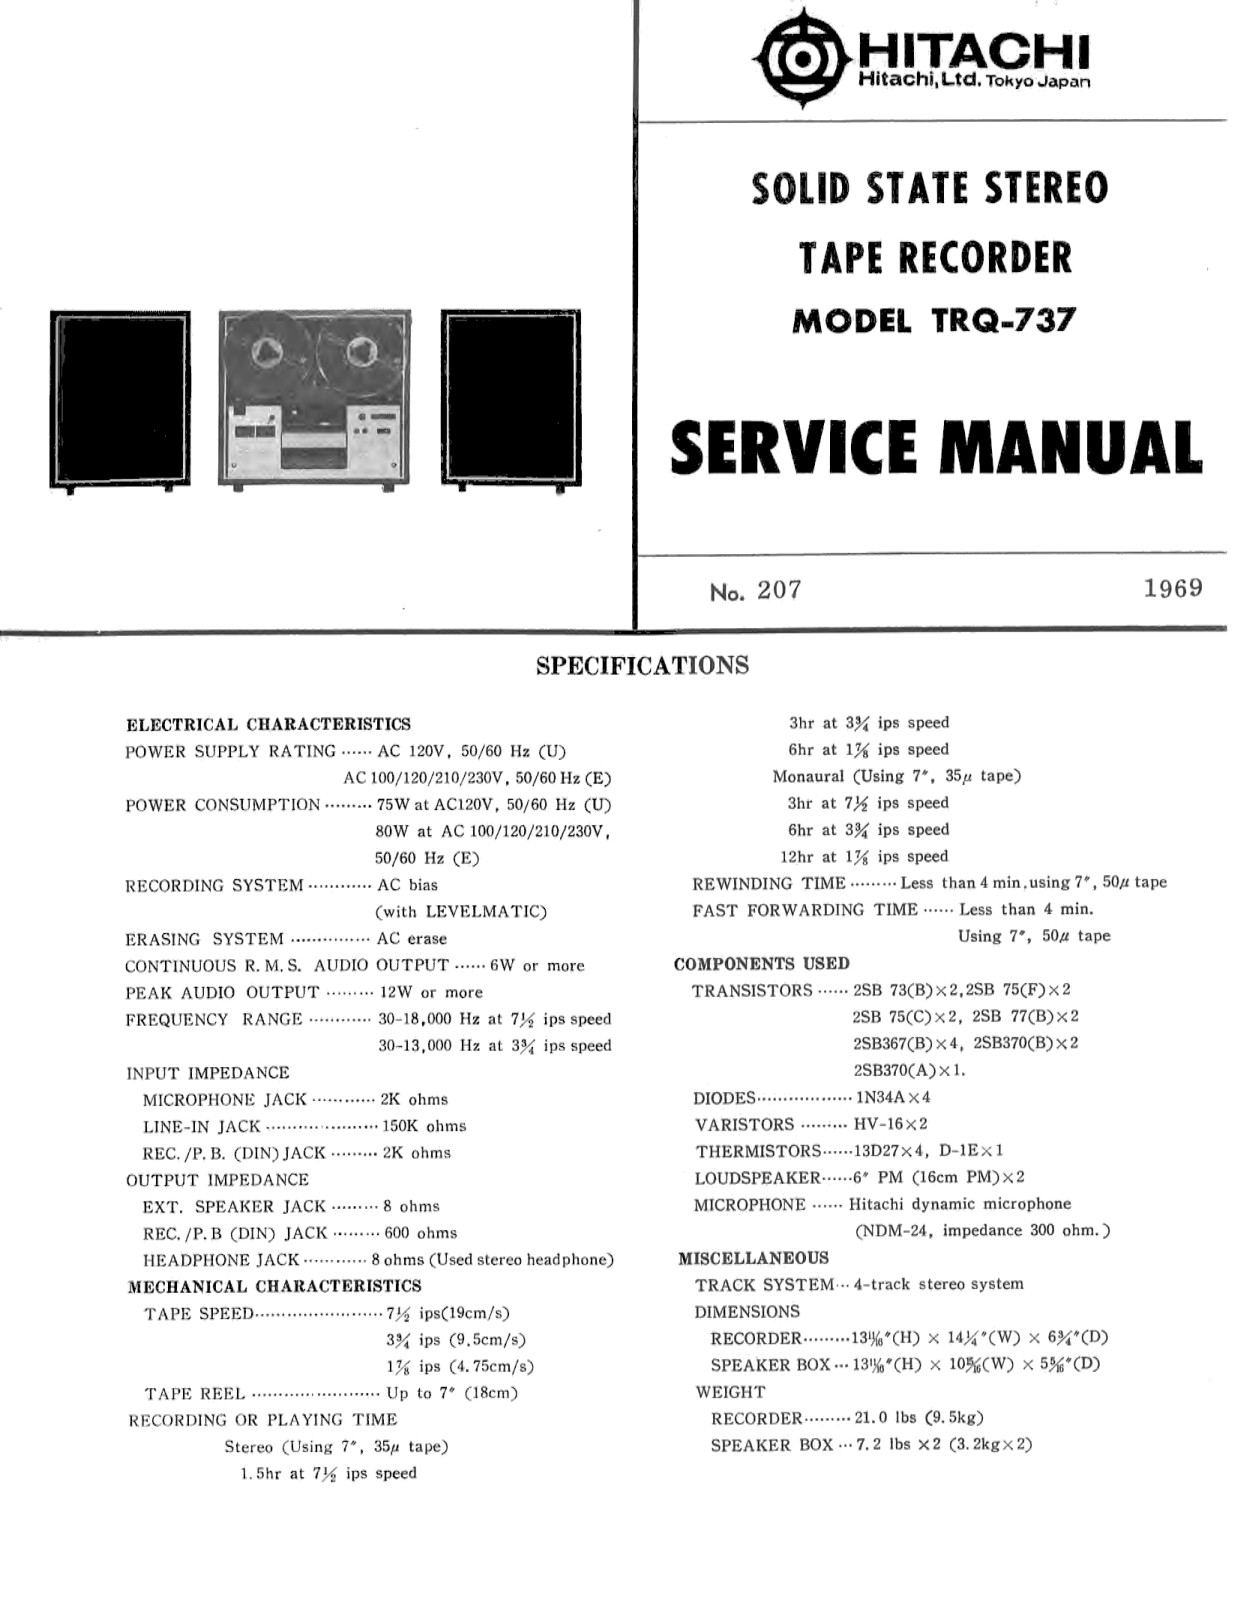 Hitachi TRQ-737 Service Manual